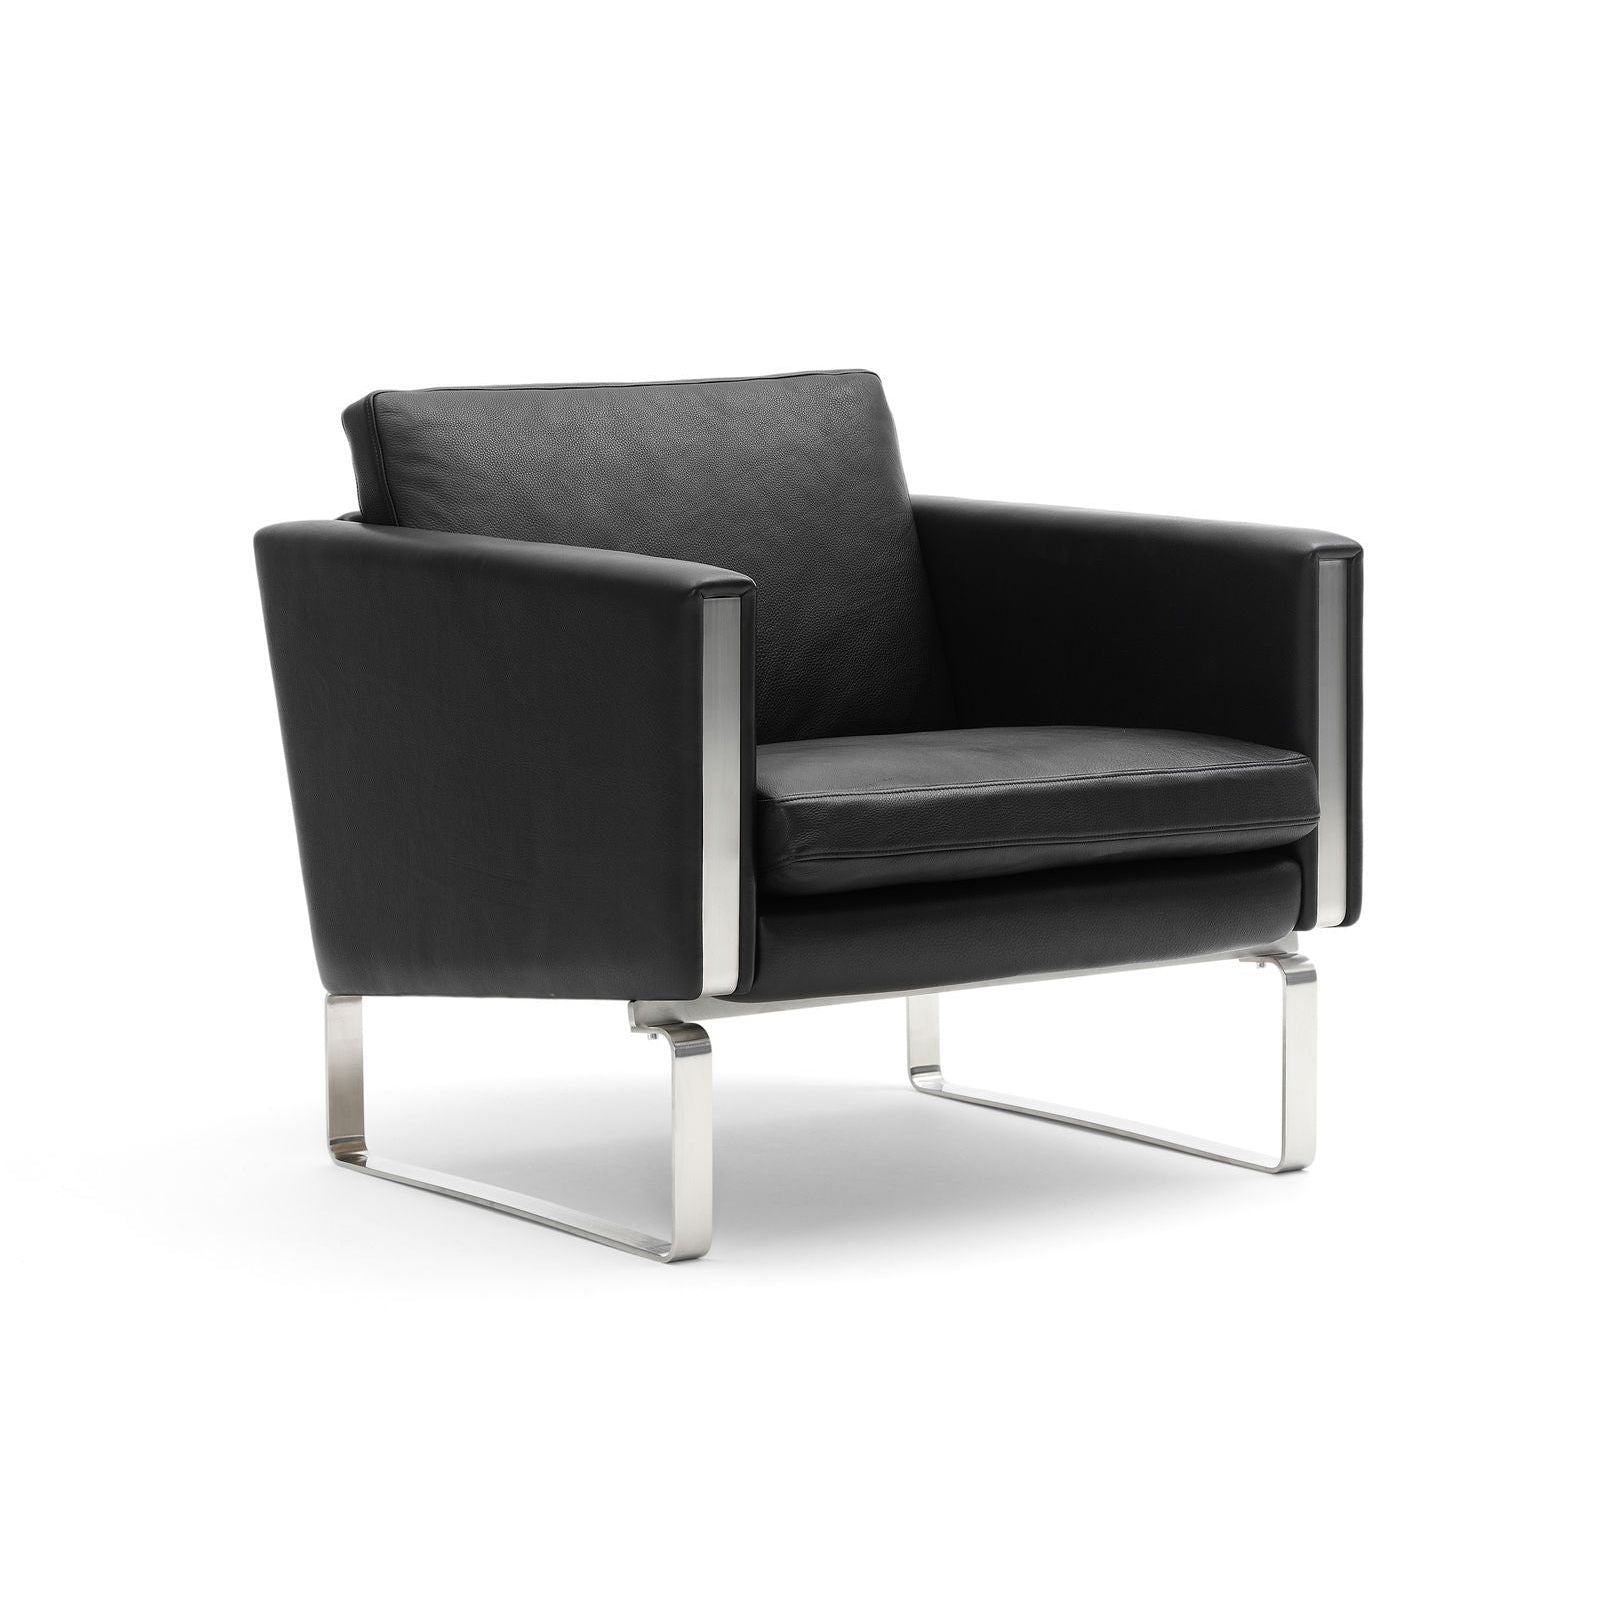 Carl Hansen CH101 Lounge stoel roestvrij staal, zwart leer (Thor 301)